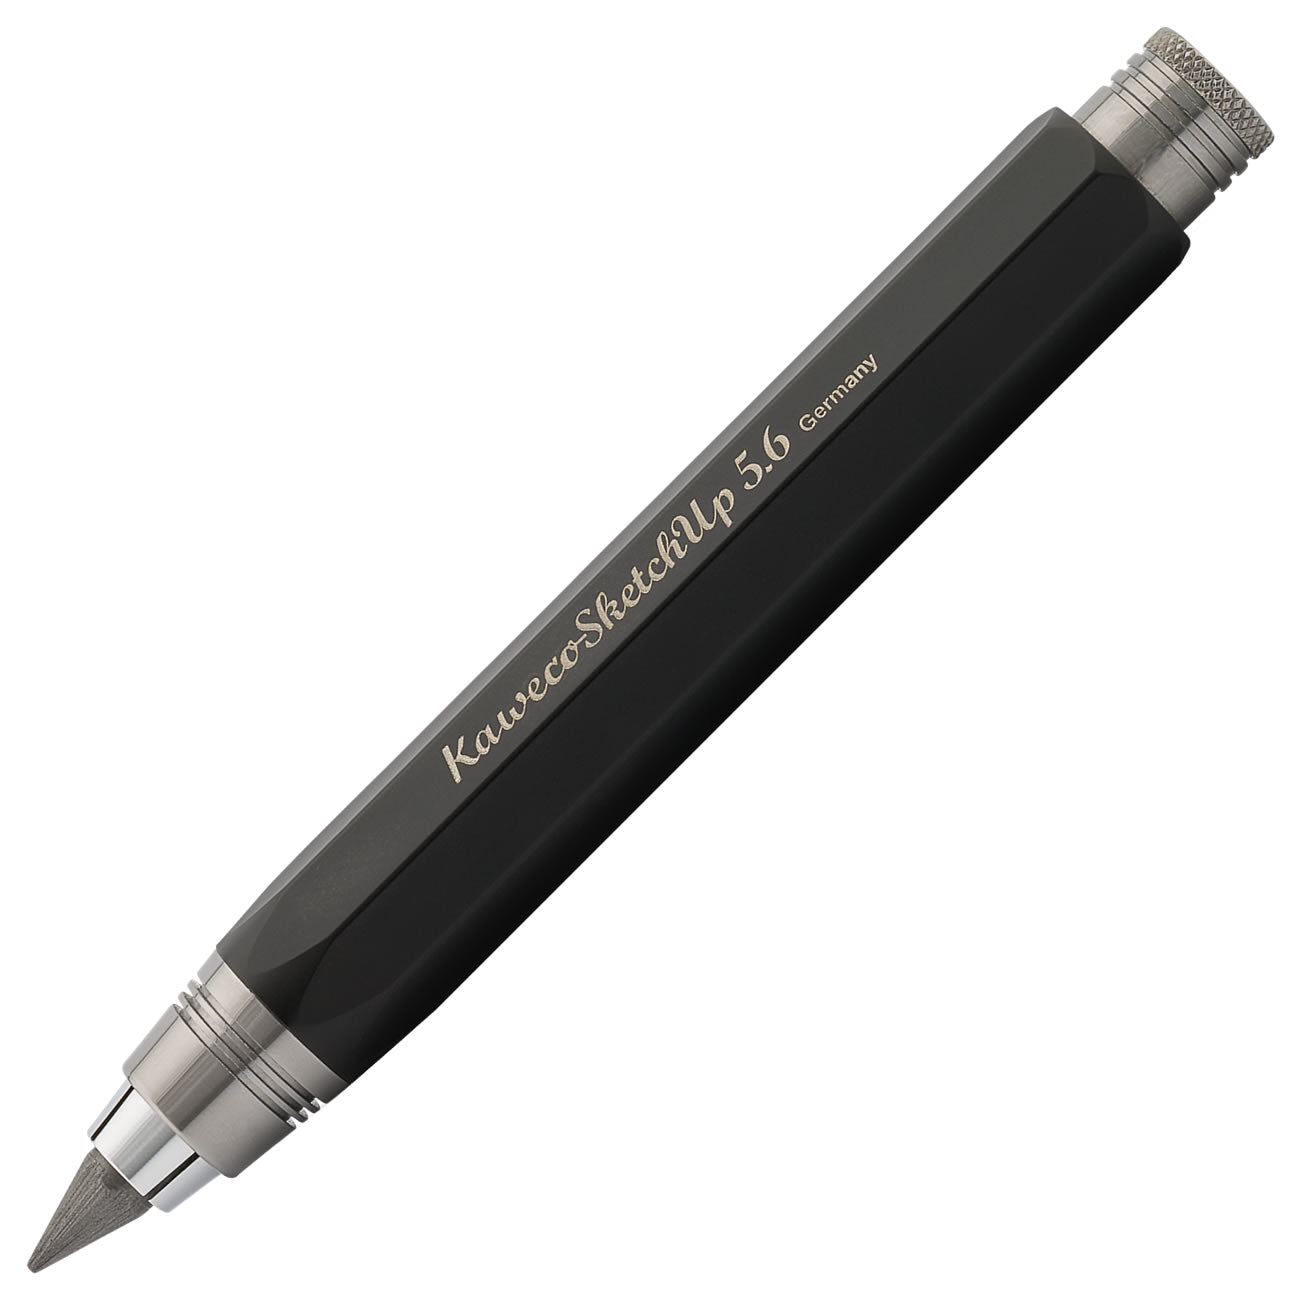 Kaweco SKETCH UP Bleistift 5.6mm schwarz